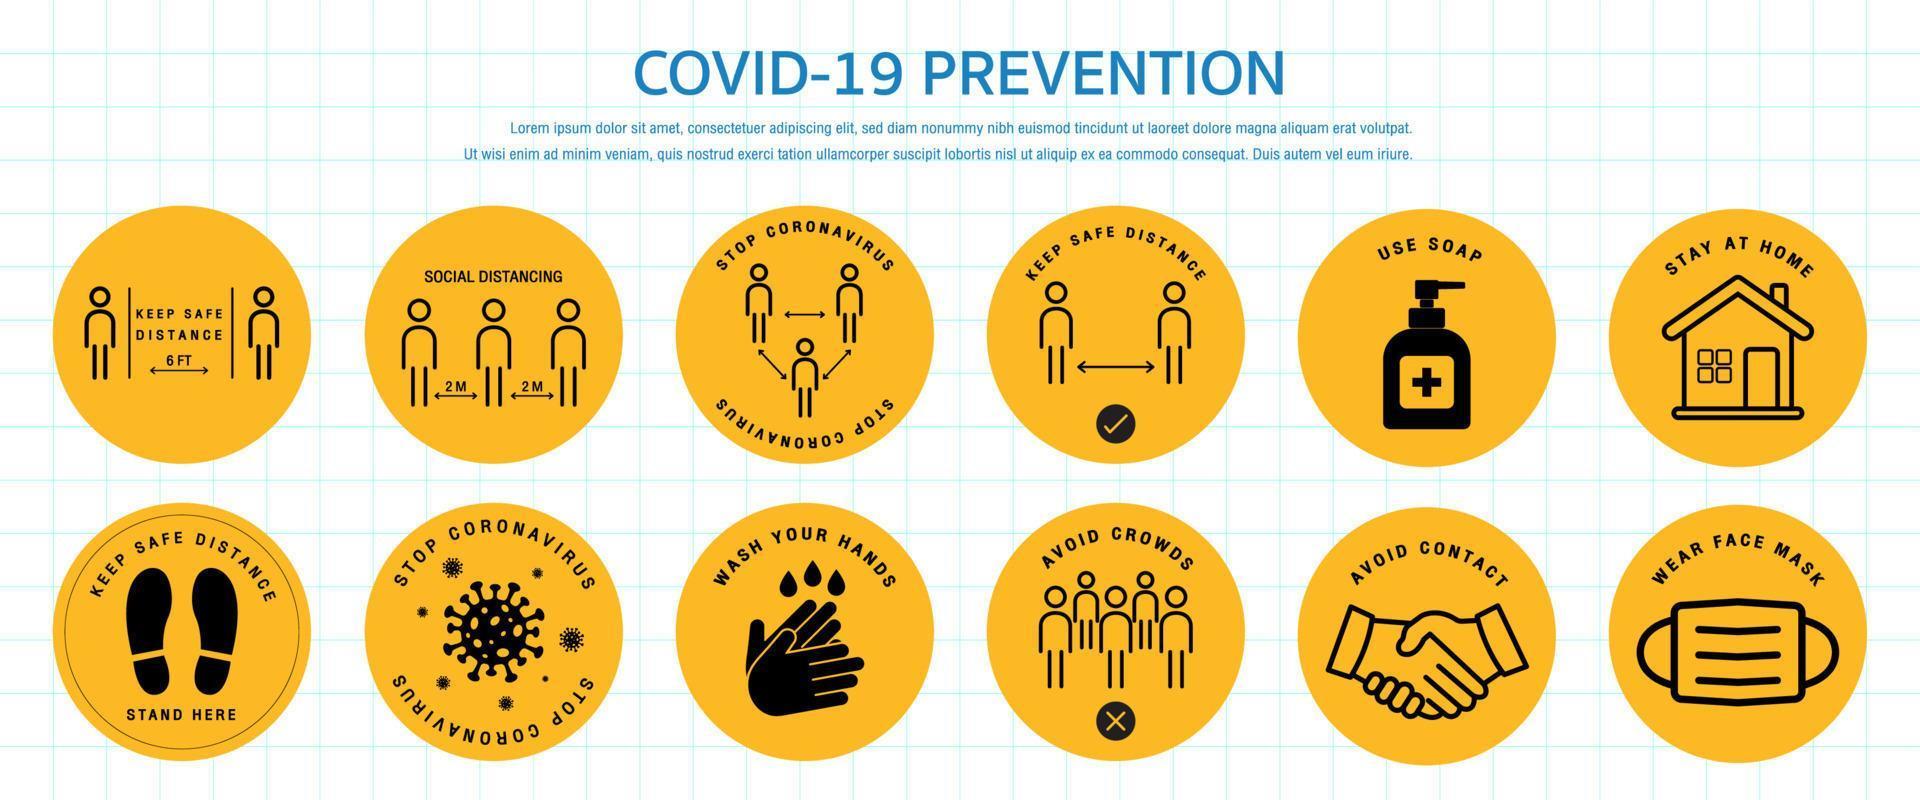 uppsättning av säkerhetsåtgärder för coronavirus covid-19 och förebyggande varningsskyltar. förebyggande tecken på coronavirus. grundläggande skyddsåtgärder mot det nya coronaviruset. vektor